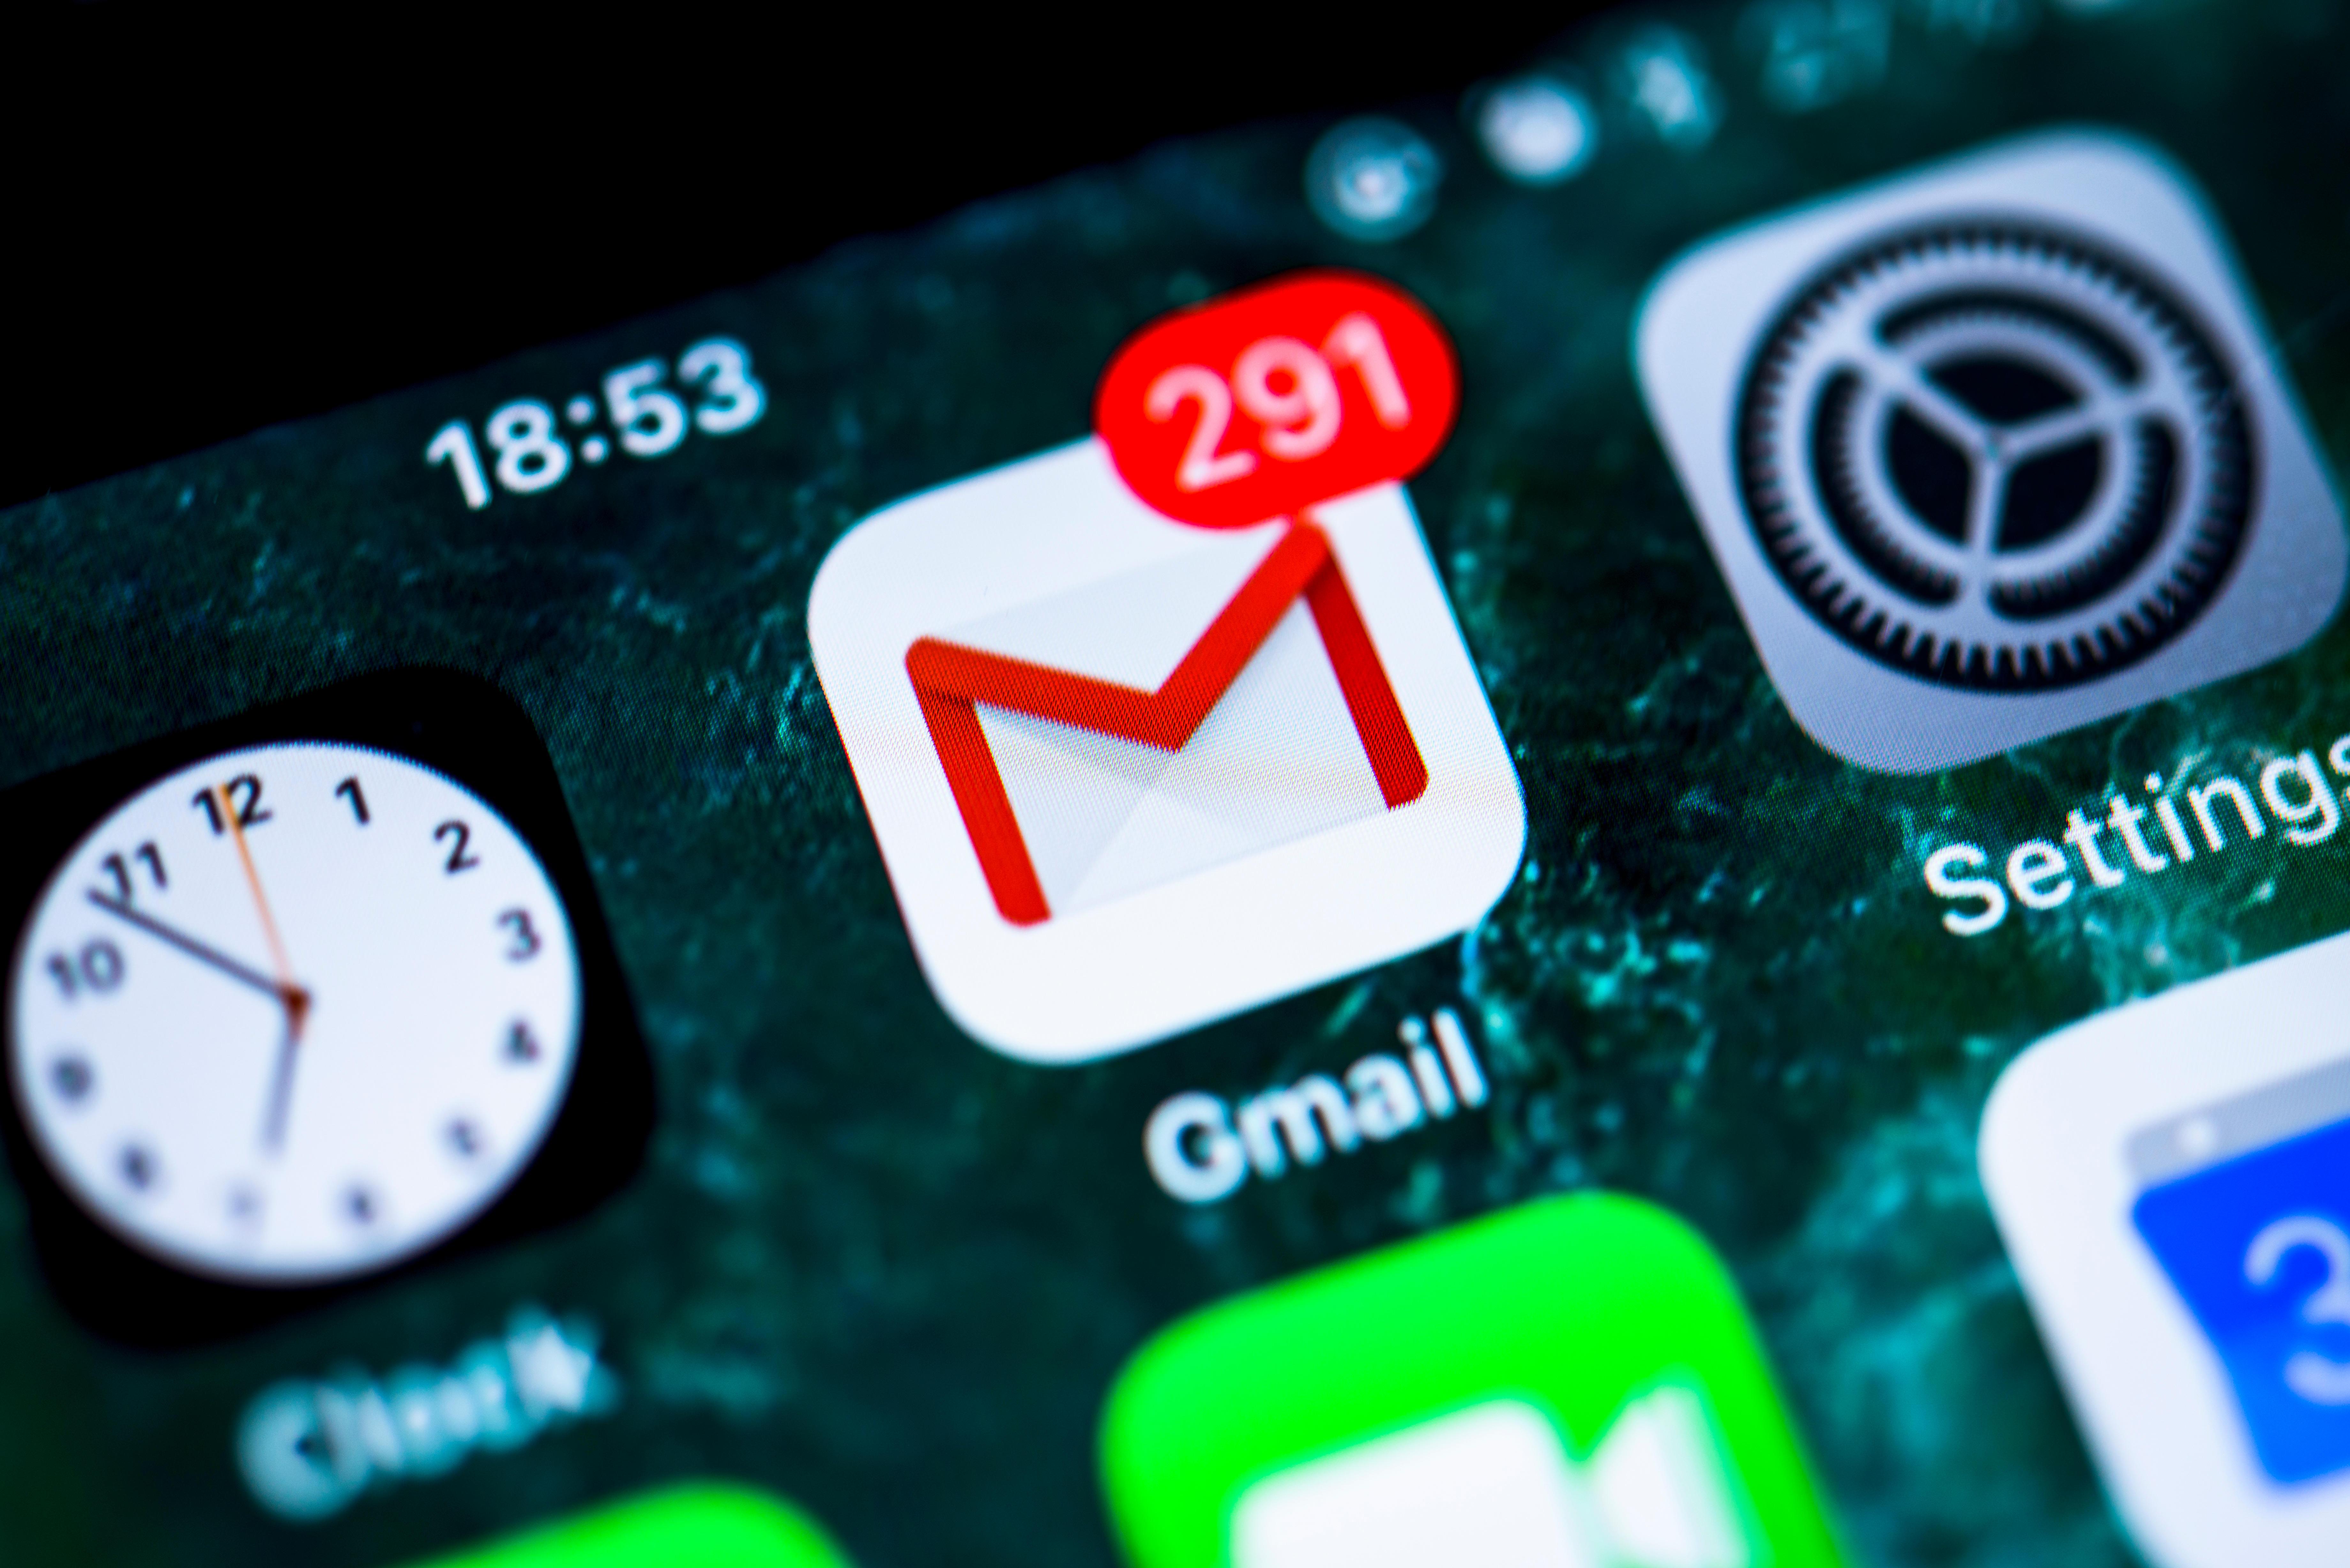  Kami telah menyiapkan beberapa kiat dan trik panas untuk penggemar Gmail